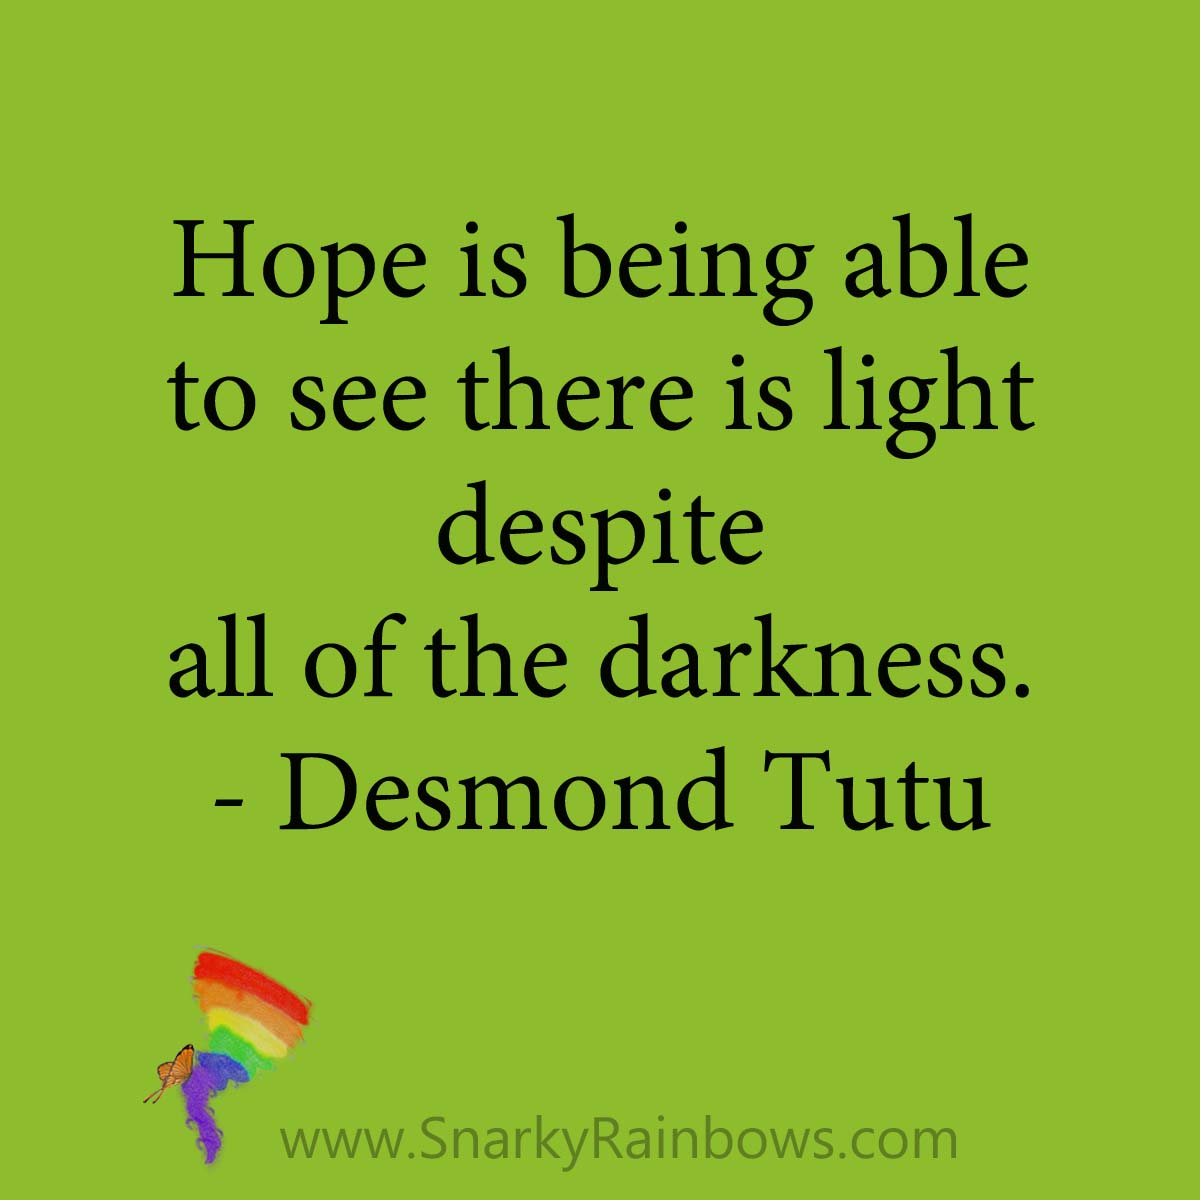 quote Desmond Tutu light despite darkness